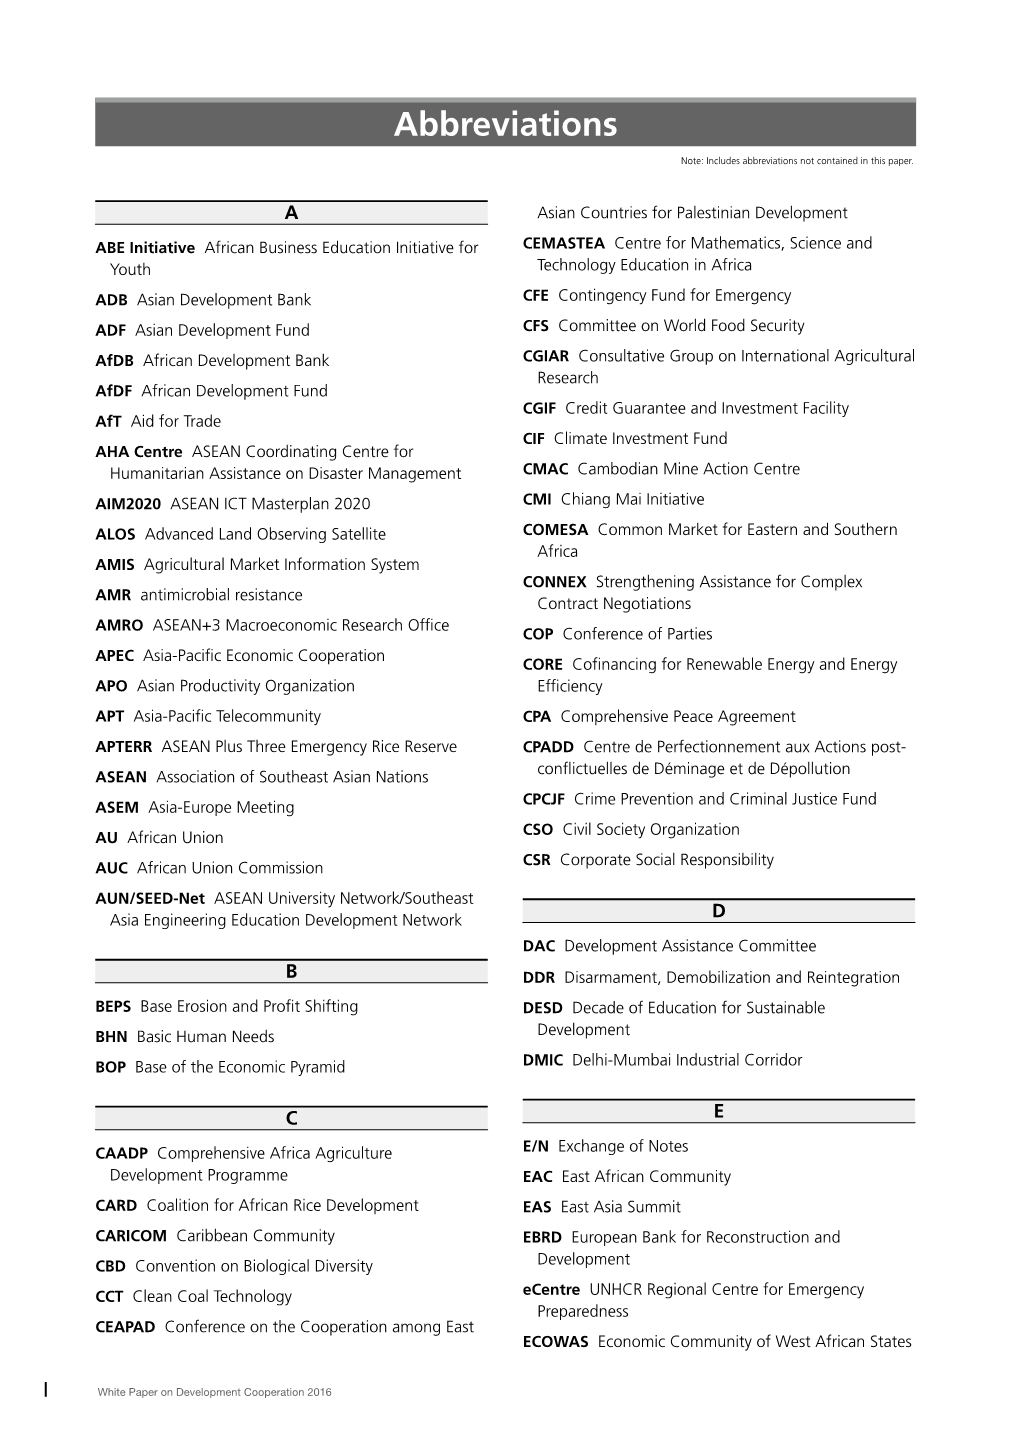 Abbreviations (PDF)